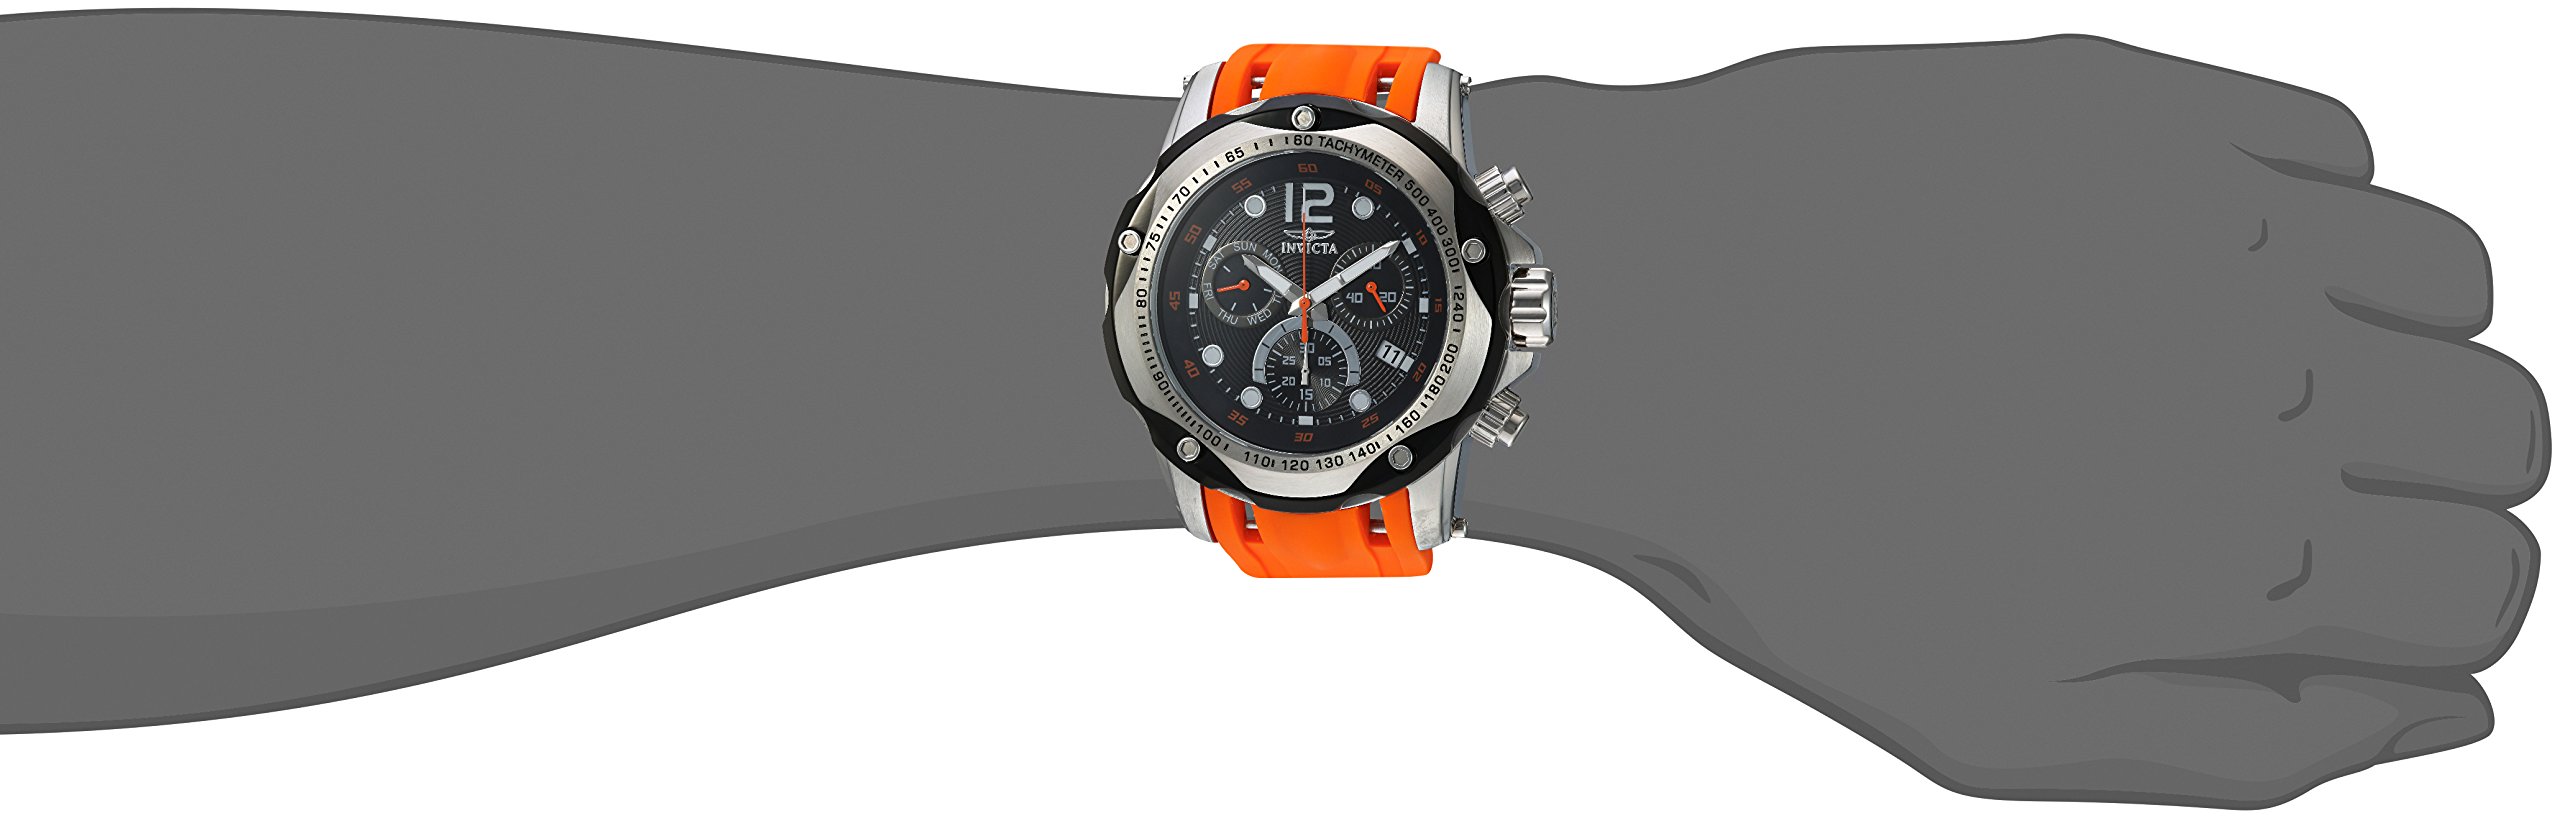 Invicta Men's 20072 Speedway Analog Display Swiss Quartz Orange Watch